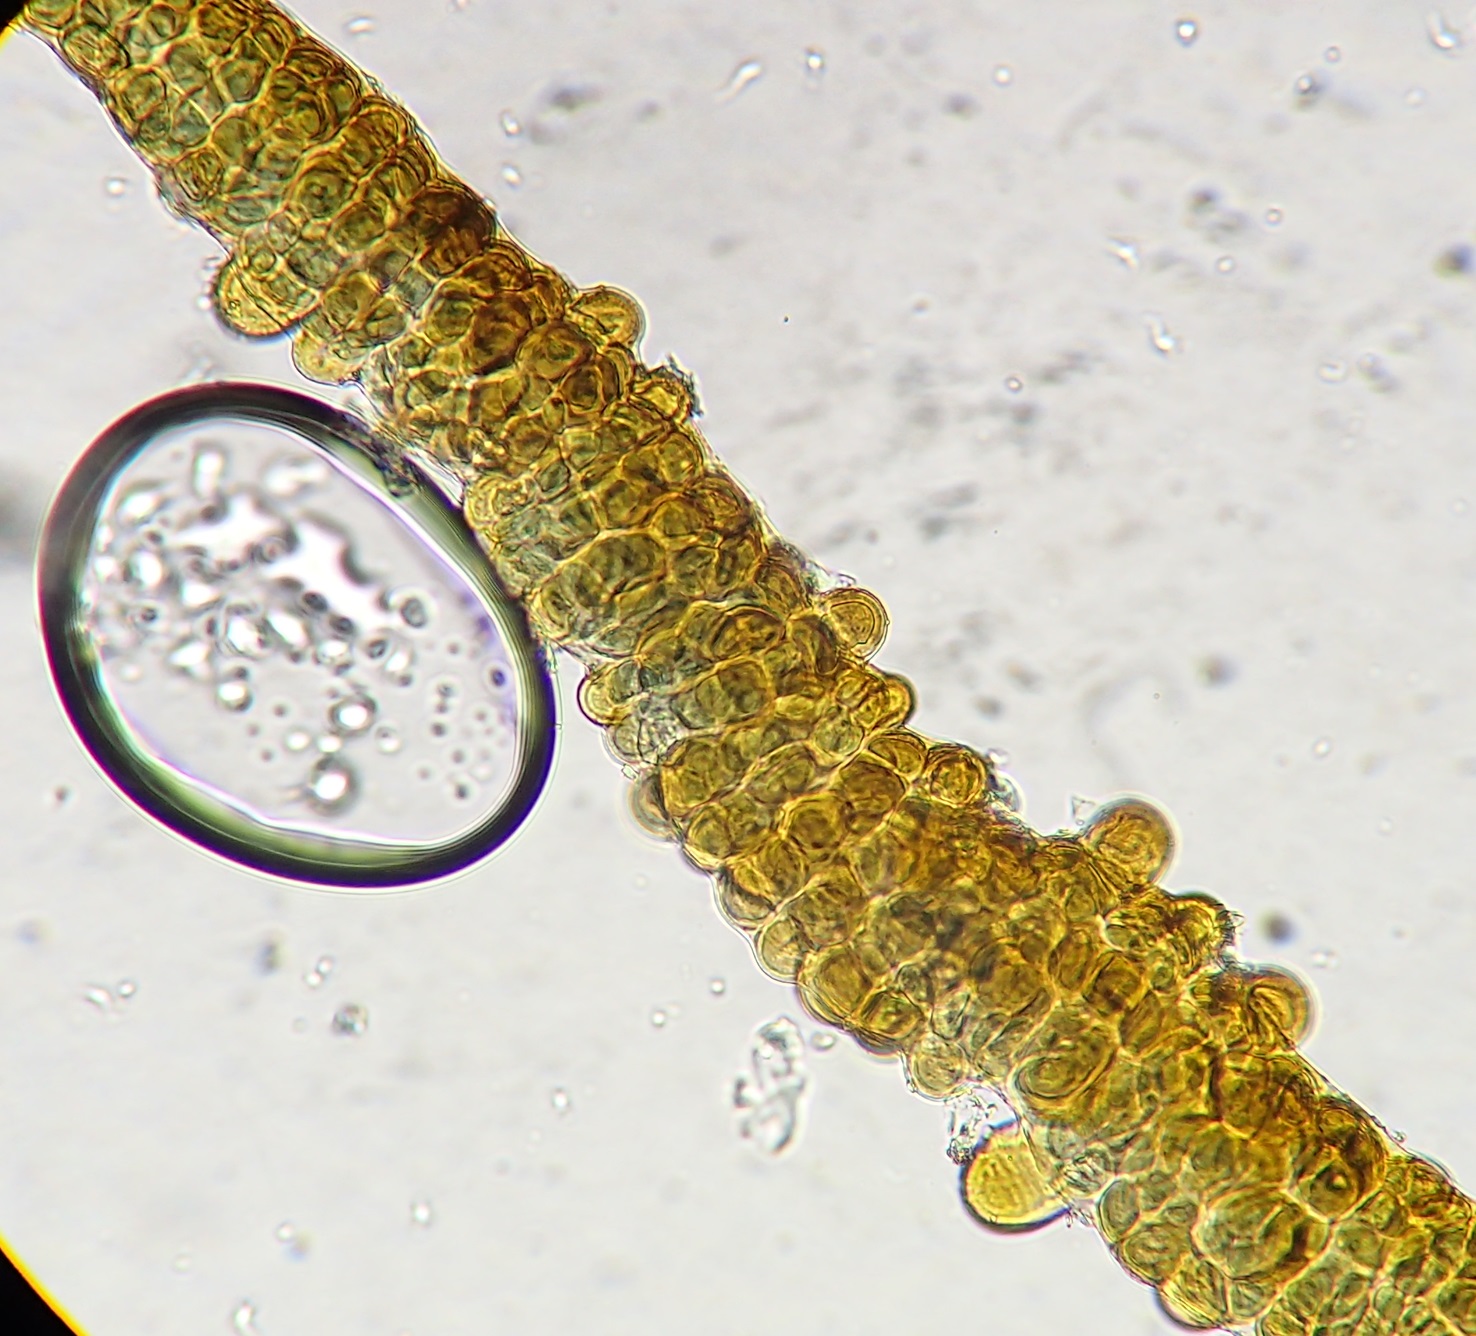 Stigonema cyanobacterium